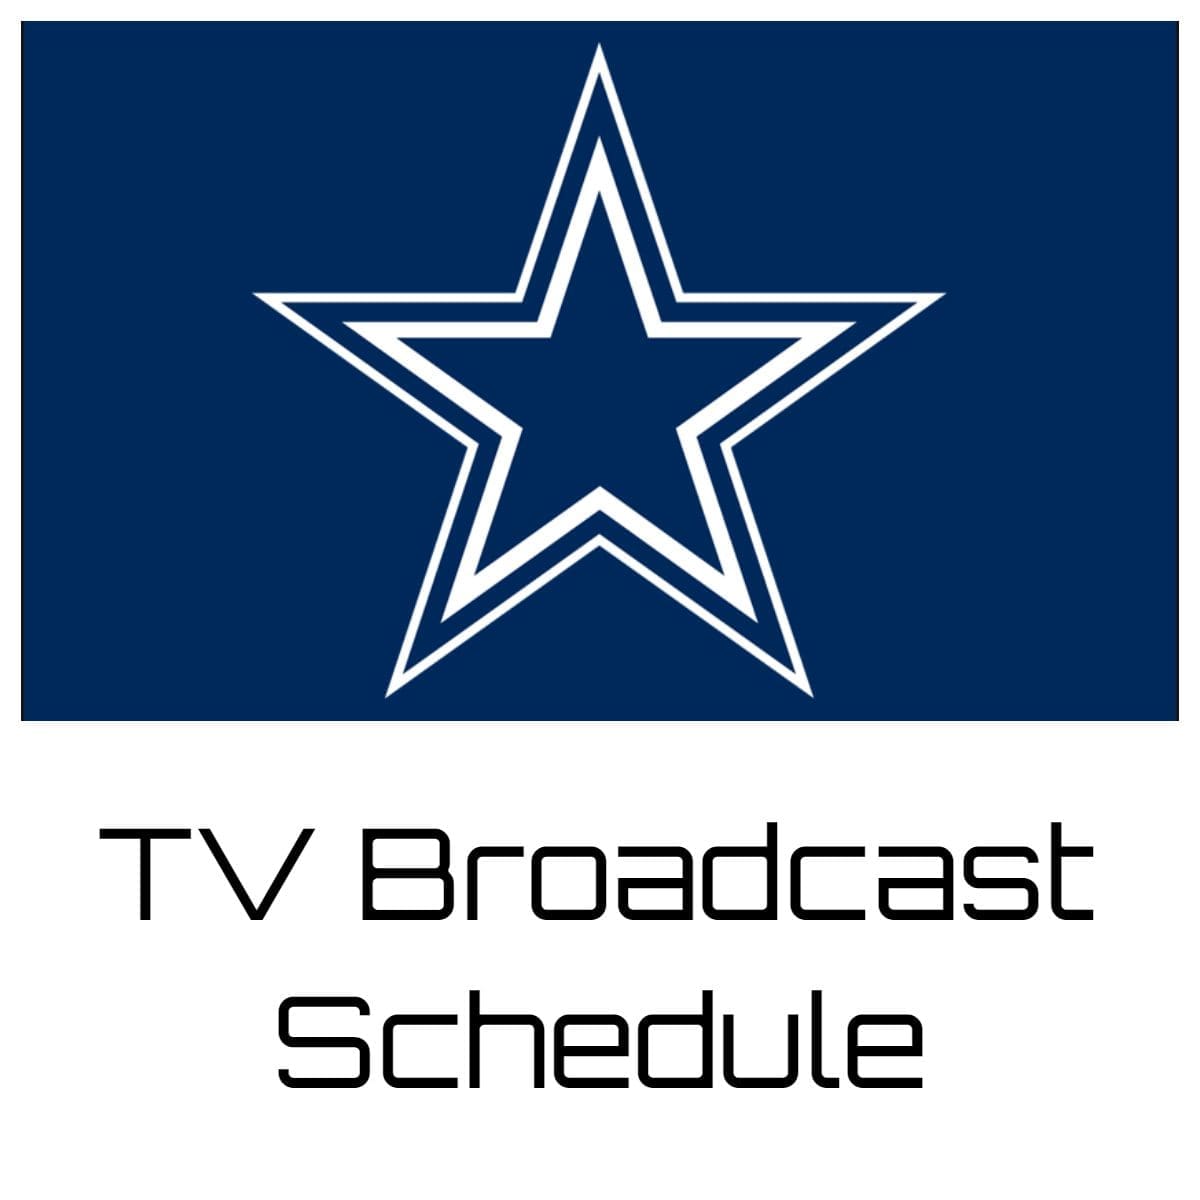 Dallas Cowboys TV Broadcast Schedule